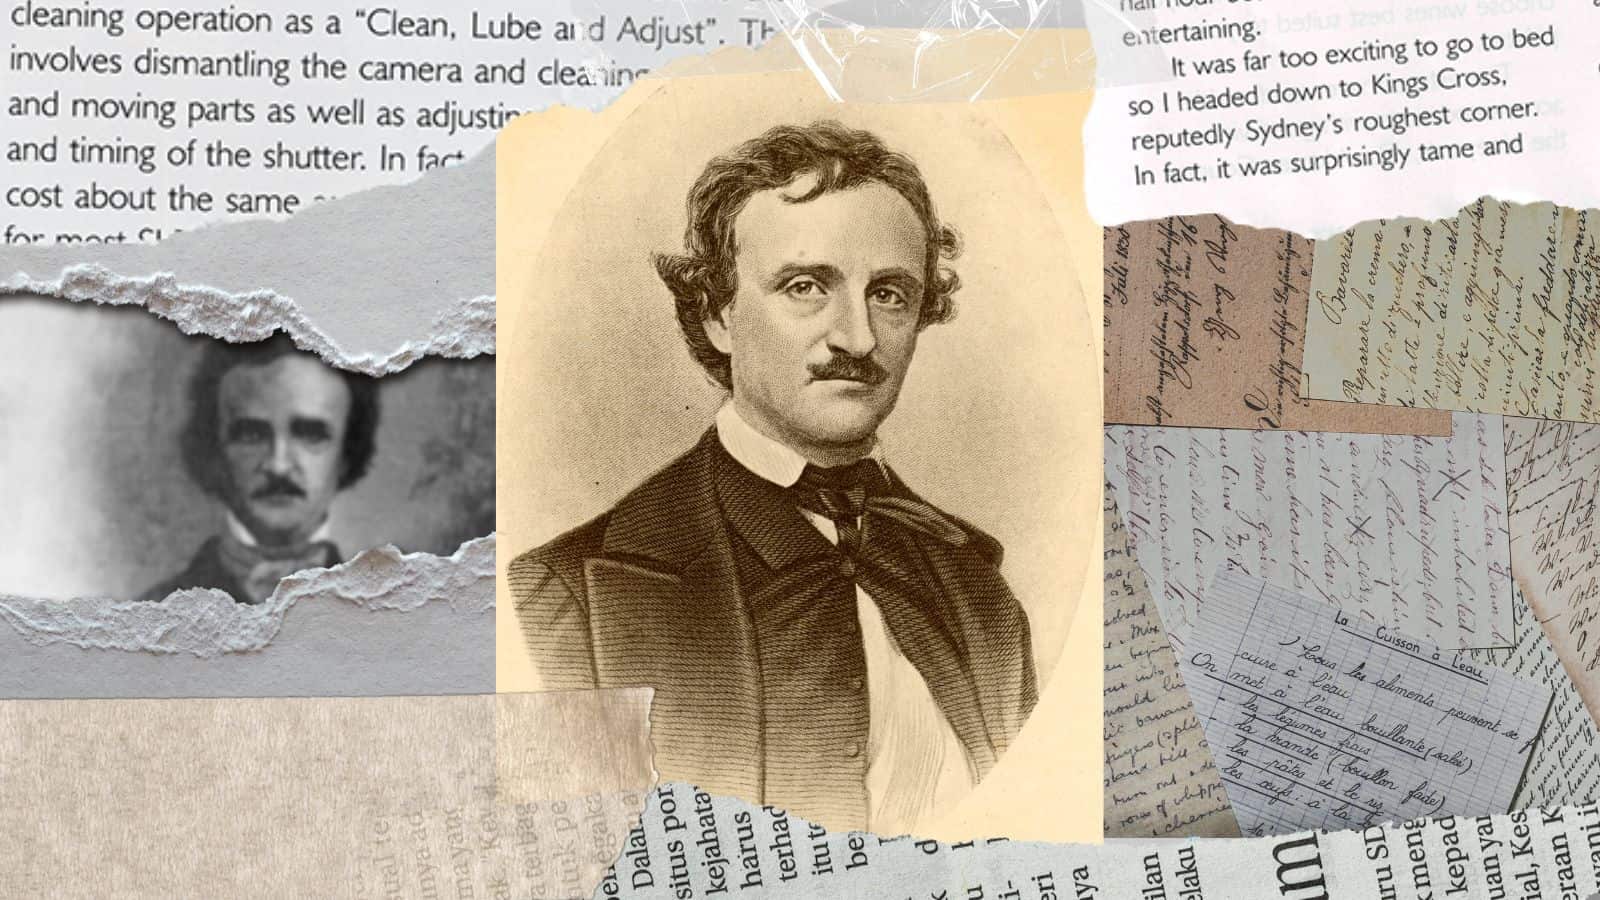 La triste fine del genio letterario E.A. Poe è ancora avvolta nel mistero